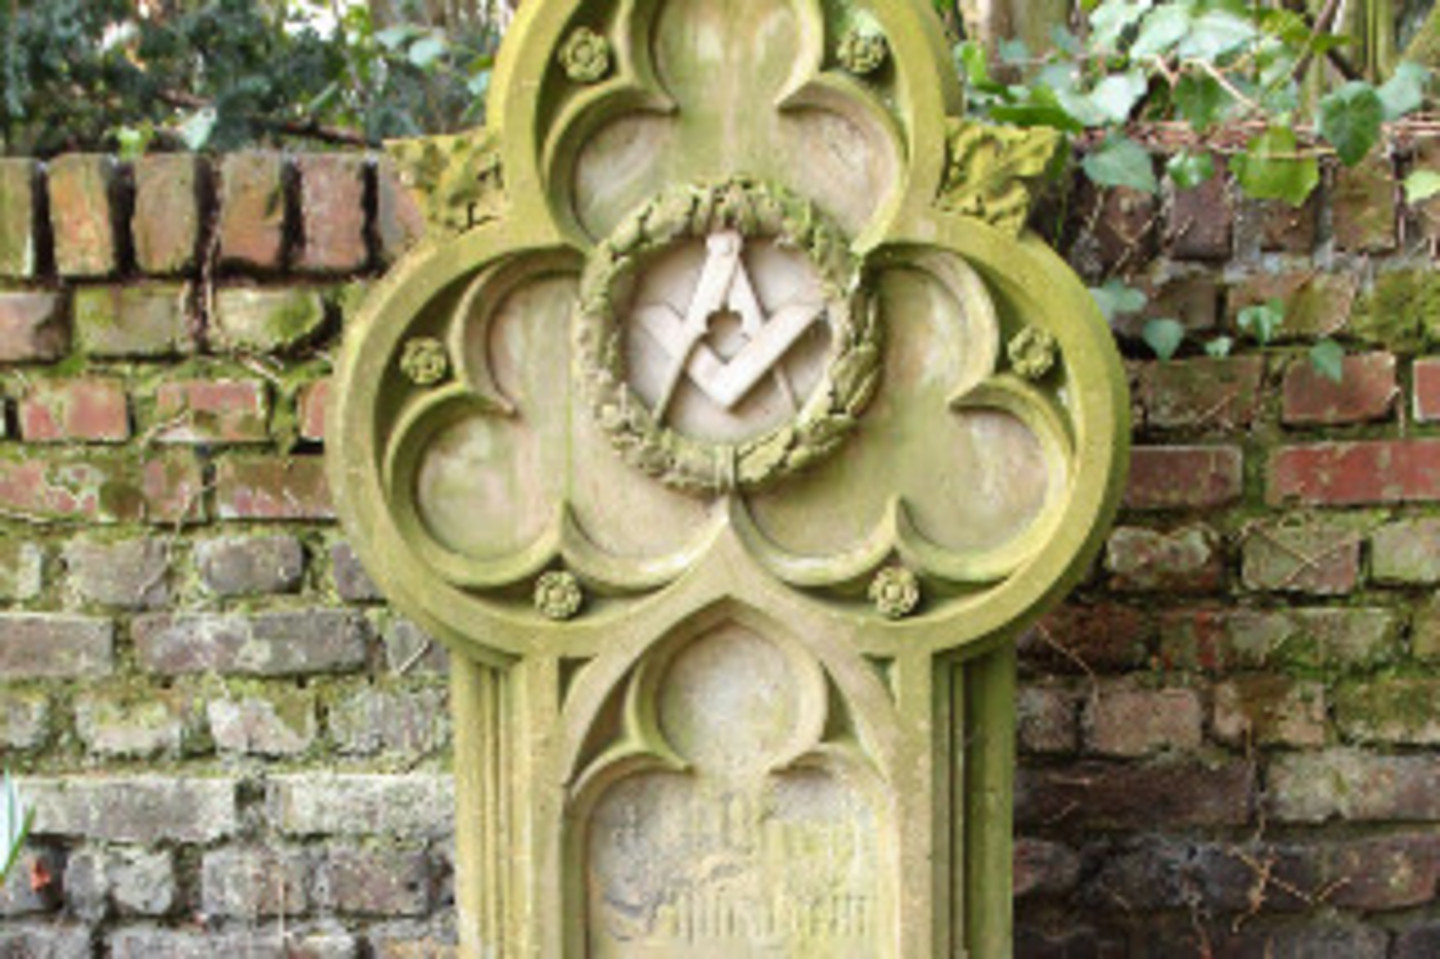 Grabmal mit antikisierenden und gotischen Elementen